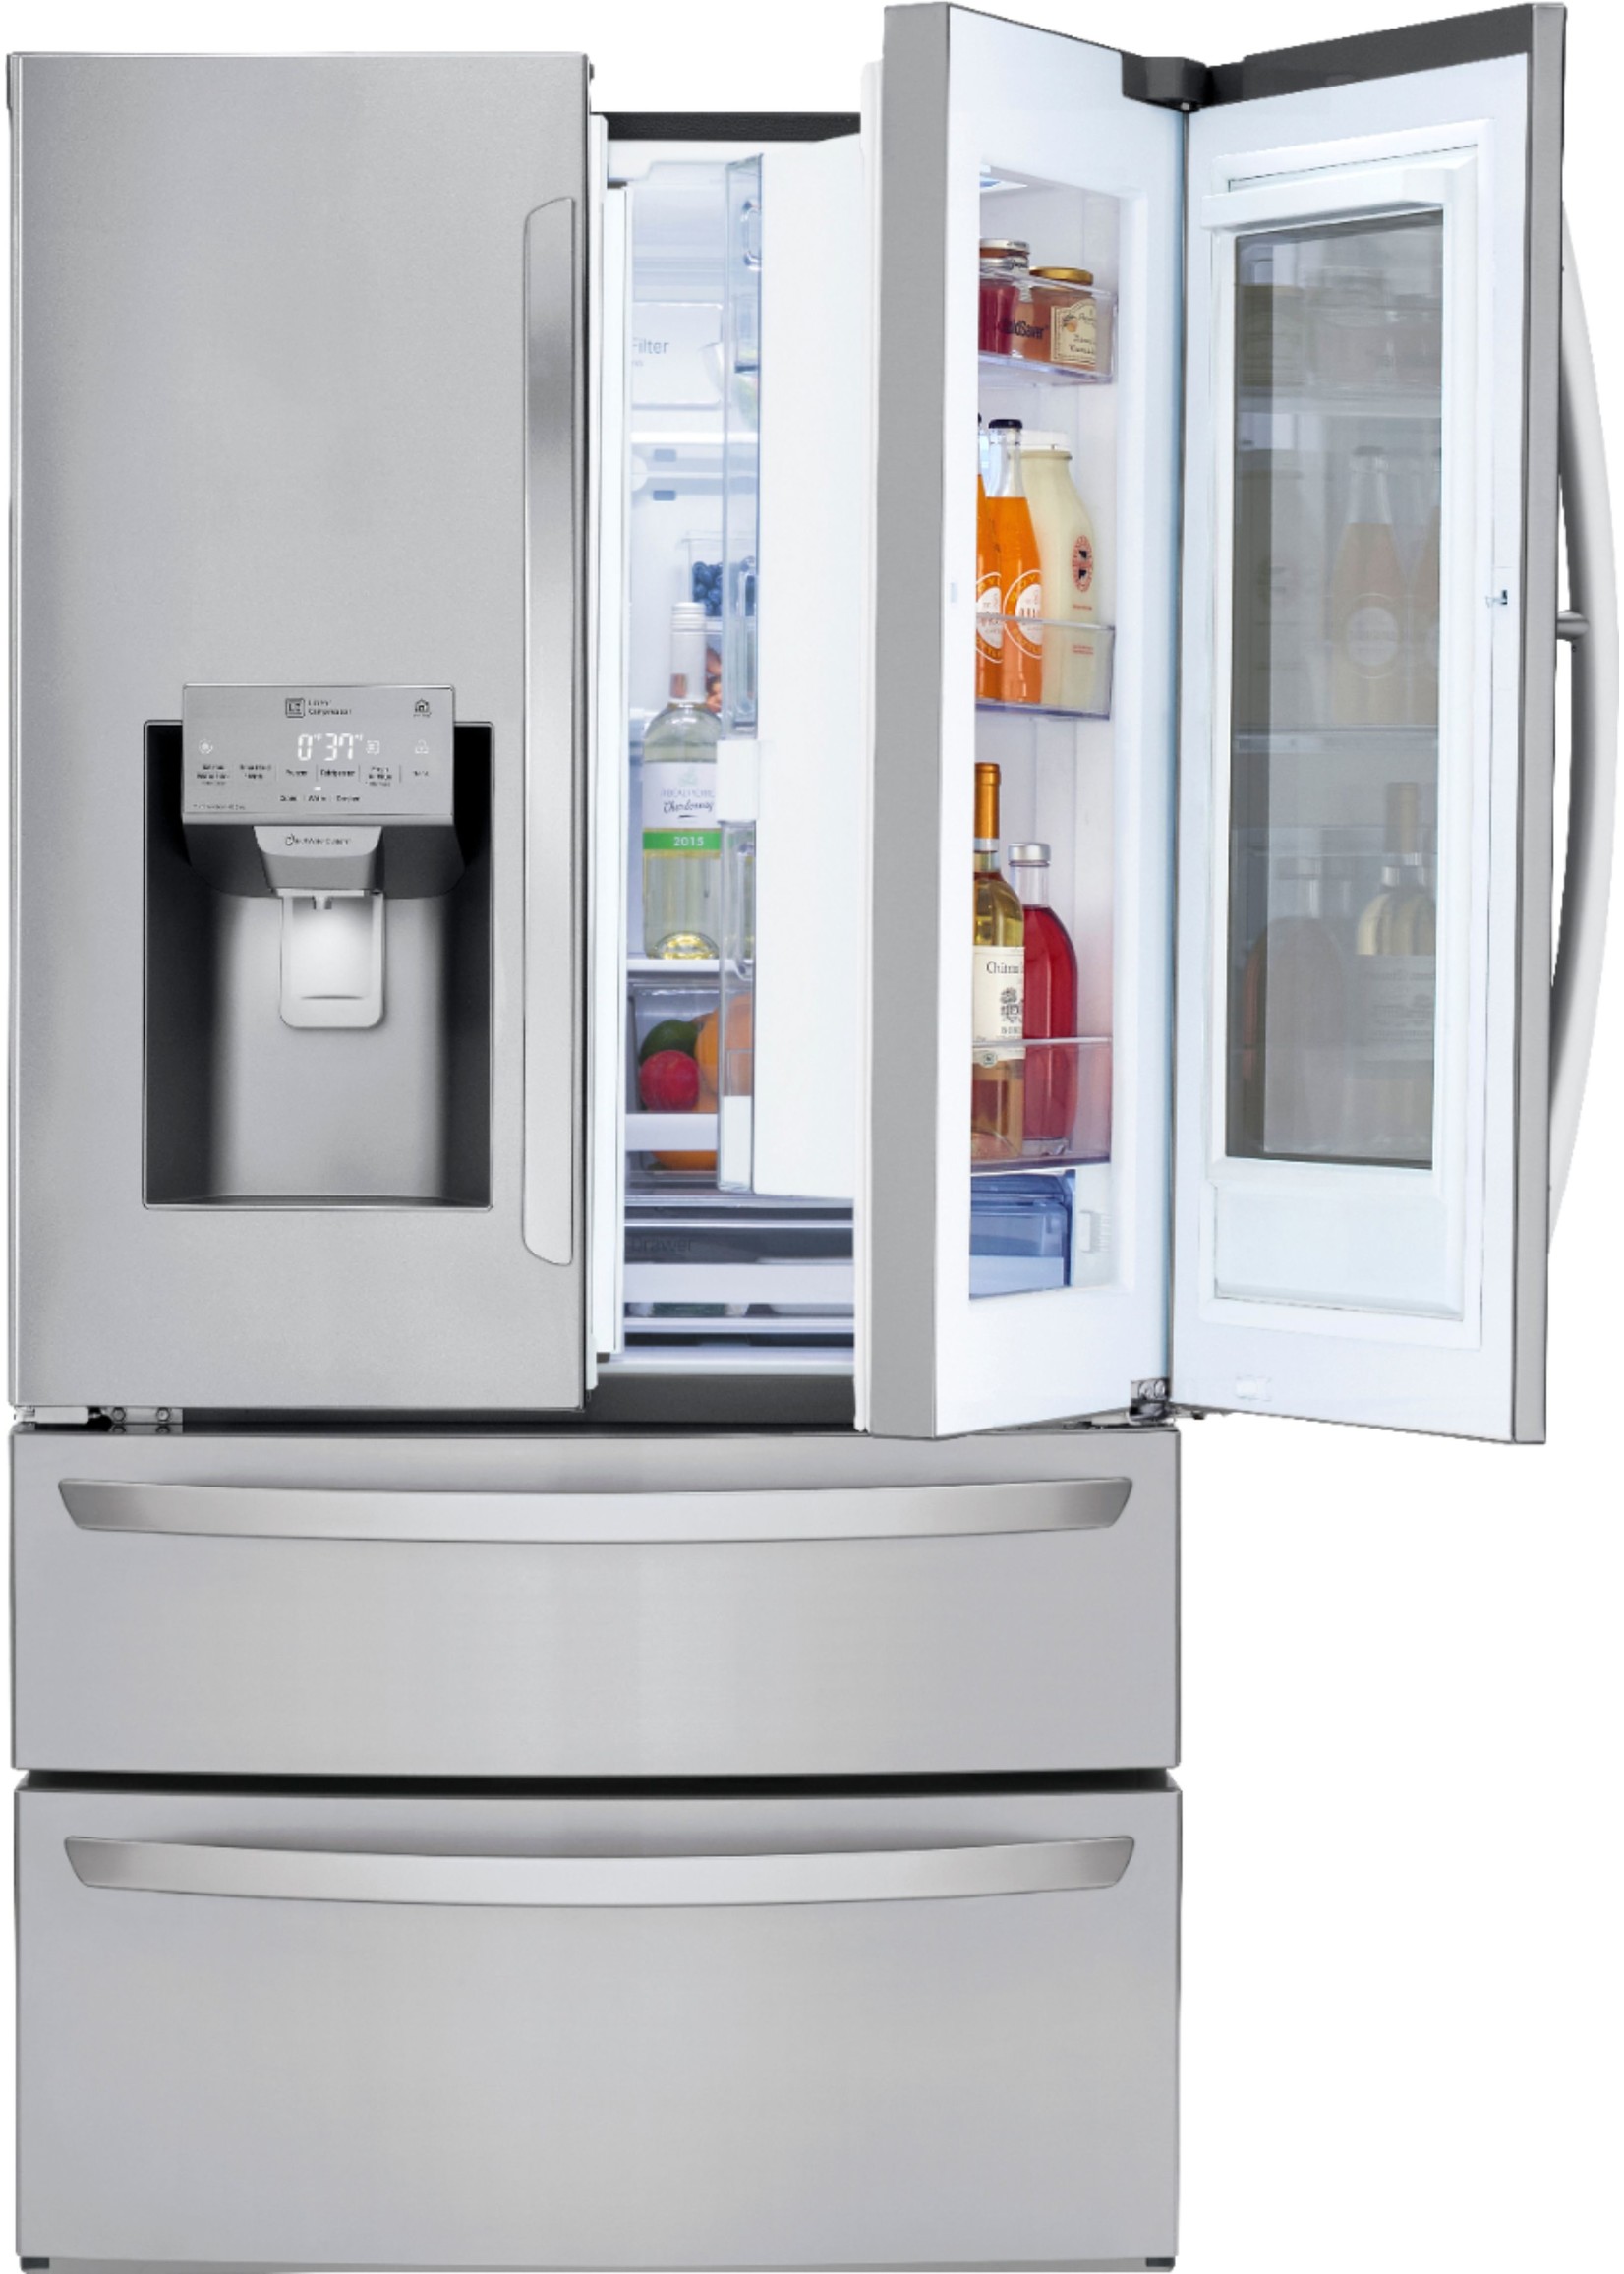 LG LG Electronics 28 cu. ft. 4-Door Smart Refrigerator with InstaView Door-in-Door in Stainless Steel